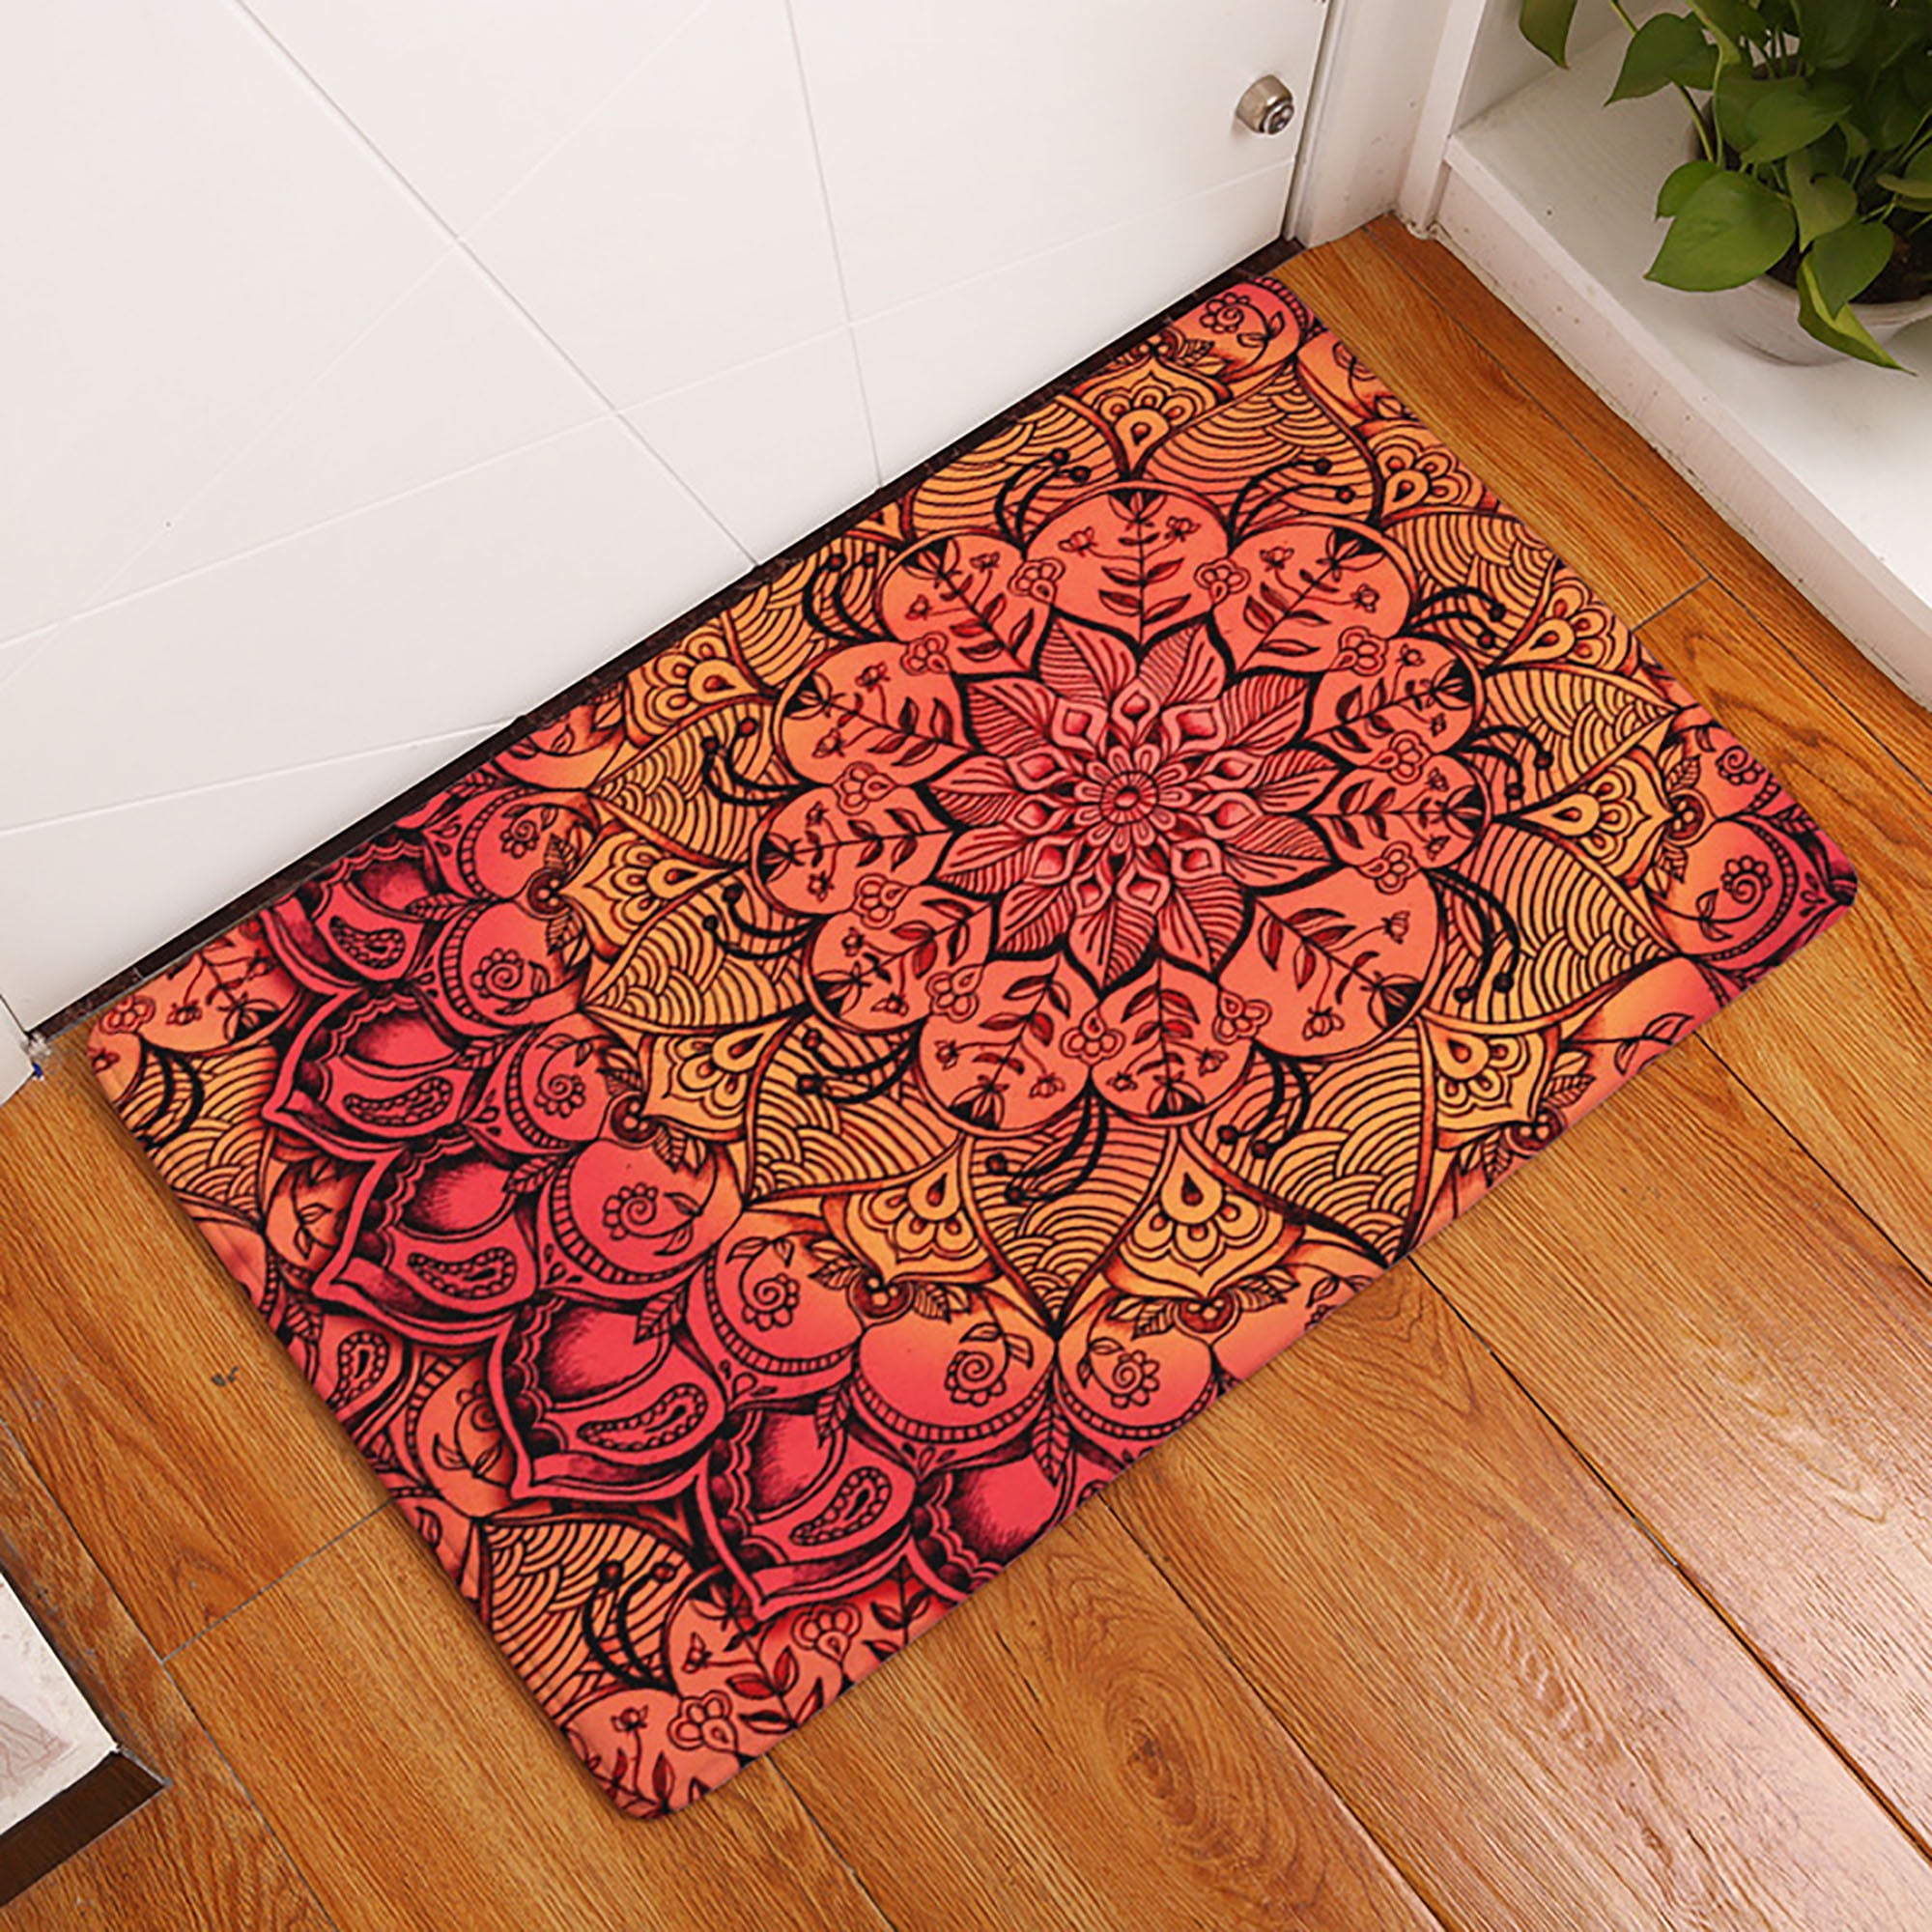 Outdoor Mat Letter Sweet Welcome Home Entrance Floor Rug Non-slip Doormat Decor 